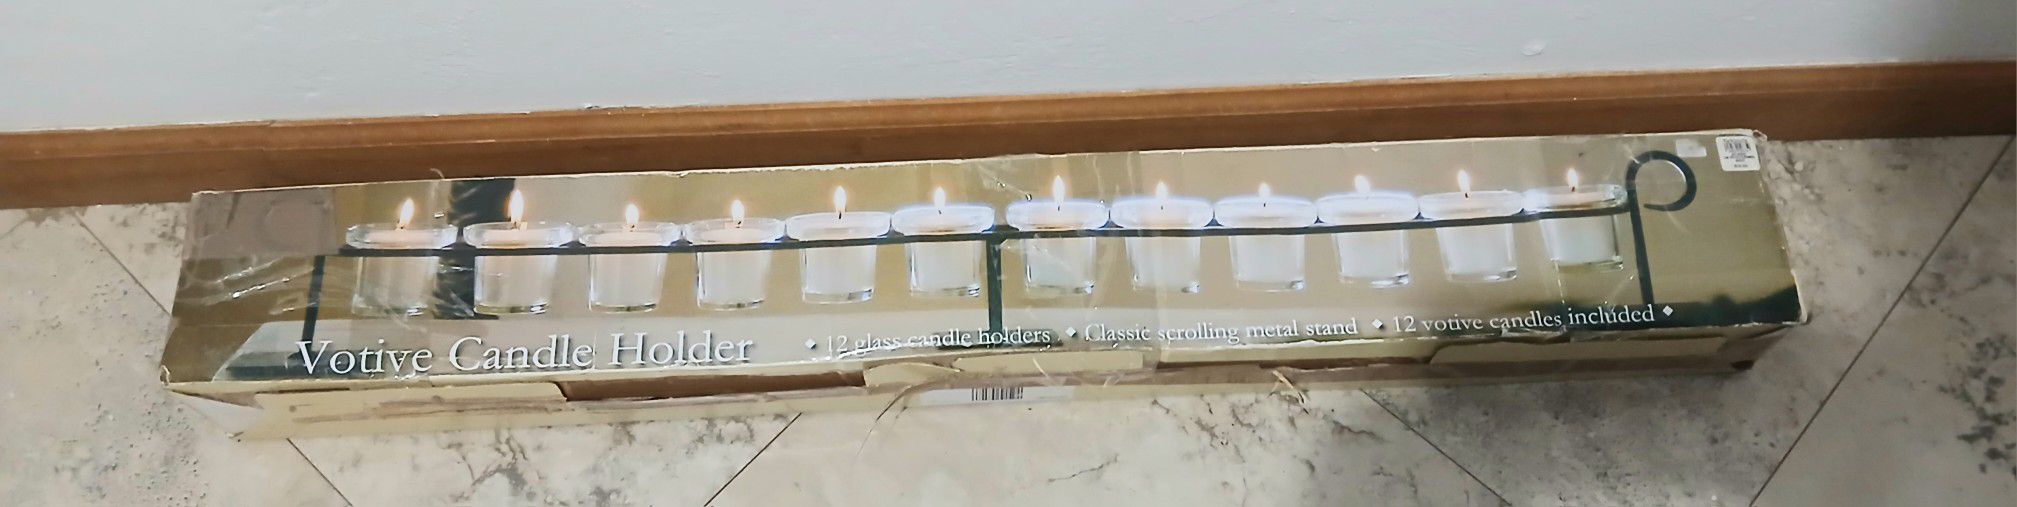 Voltive Candle Holder Metal Frame 12 Candles